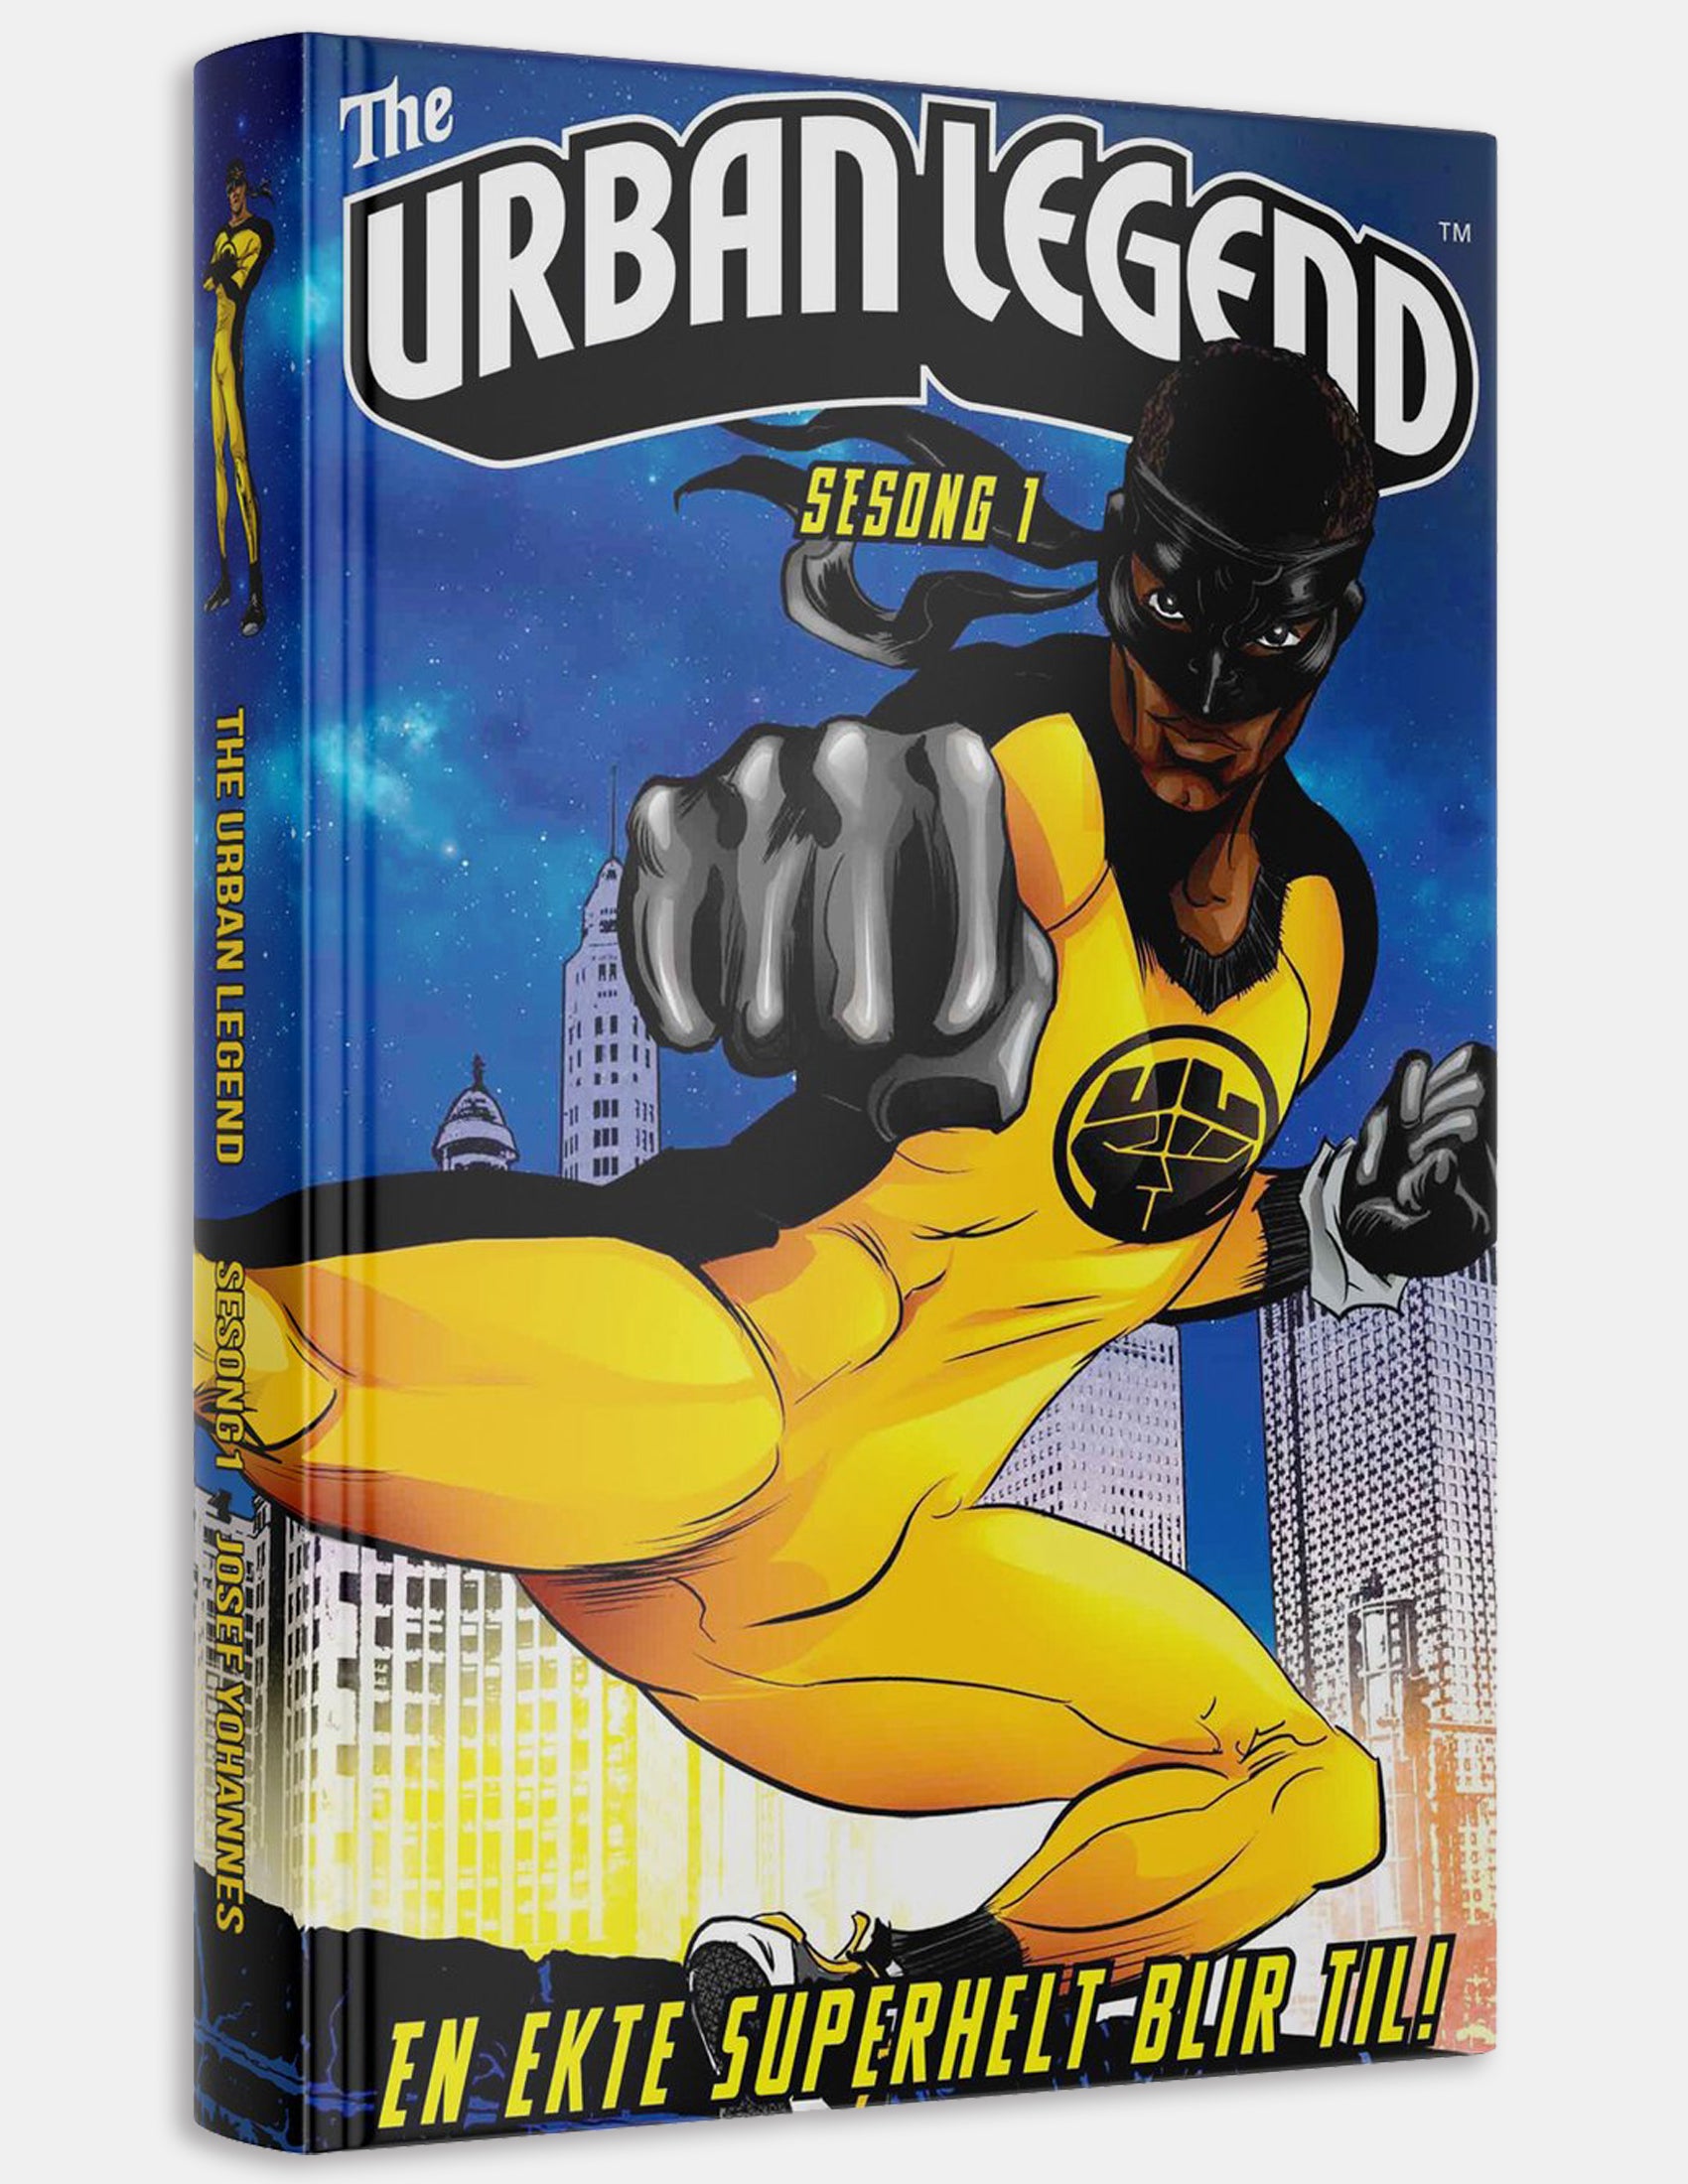 The Urban Legend - Sesong 1 - En ekte superhelt blir til! (Samlebok)